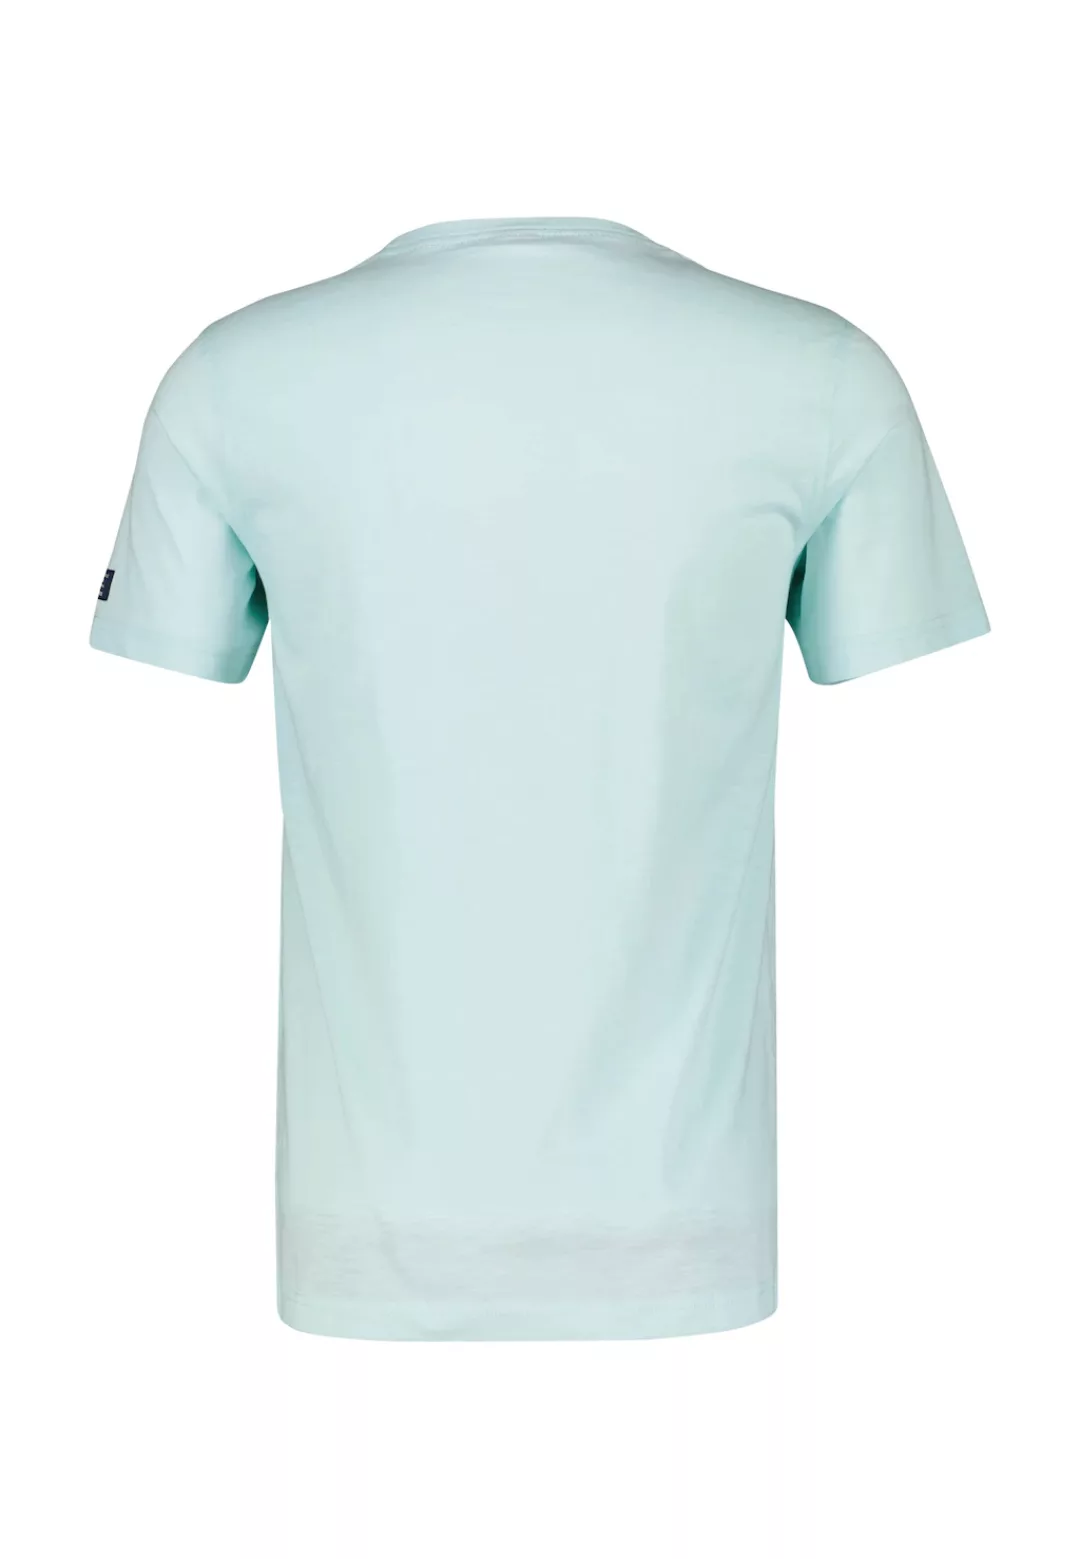 LERROS T-Shirt "LERROS T-Shirt mit Print *Ahead & Above*" günstig online kaufen